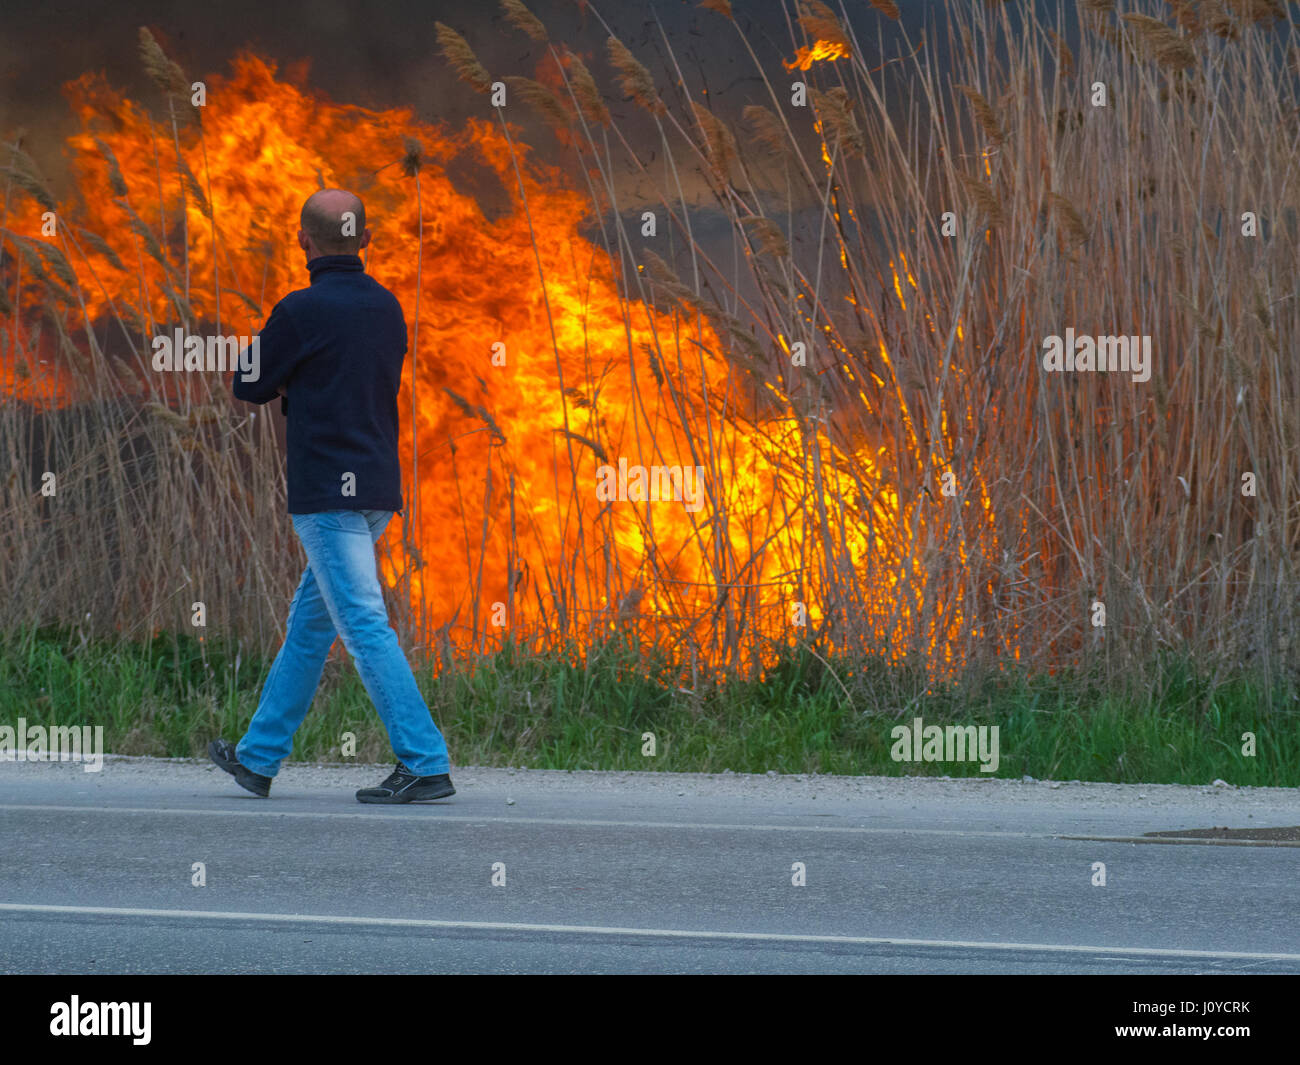 Un uomo sta camminando lungo la strada nei pressi di un incendio Foto Stock